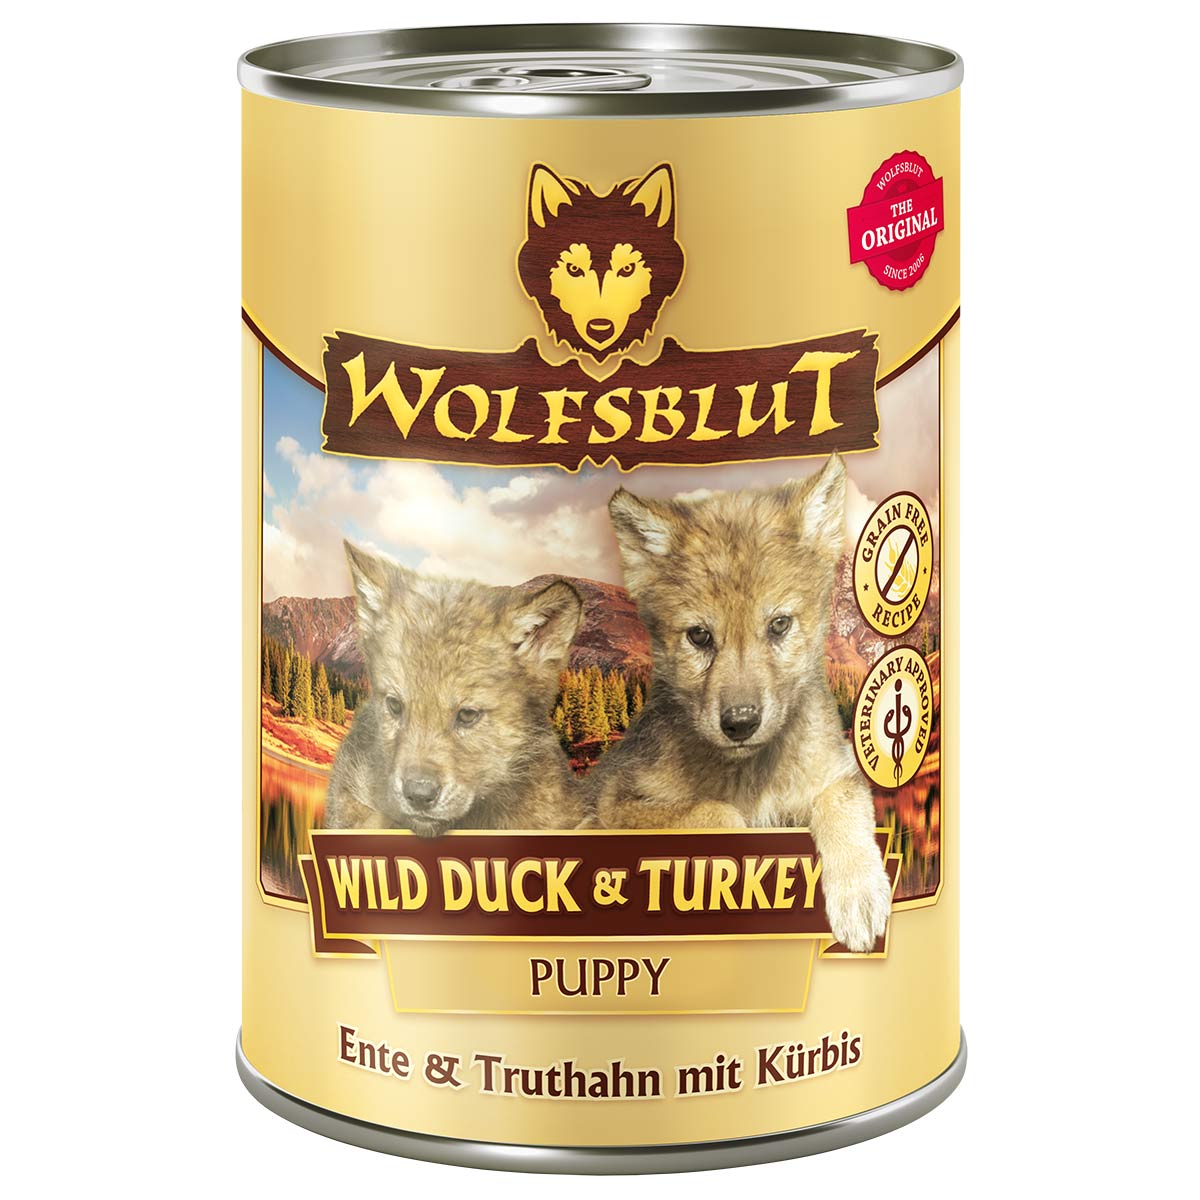 Wolfsblut Wild Duck & Turkey Puppy